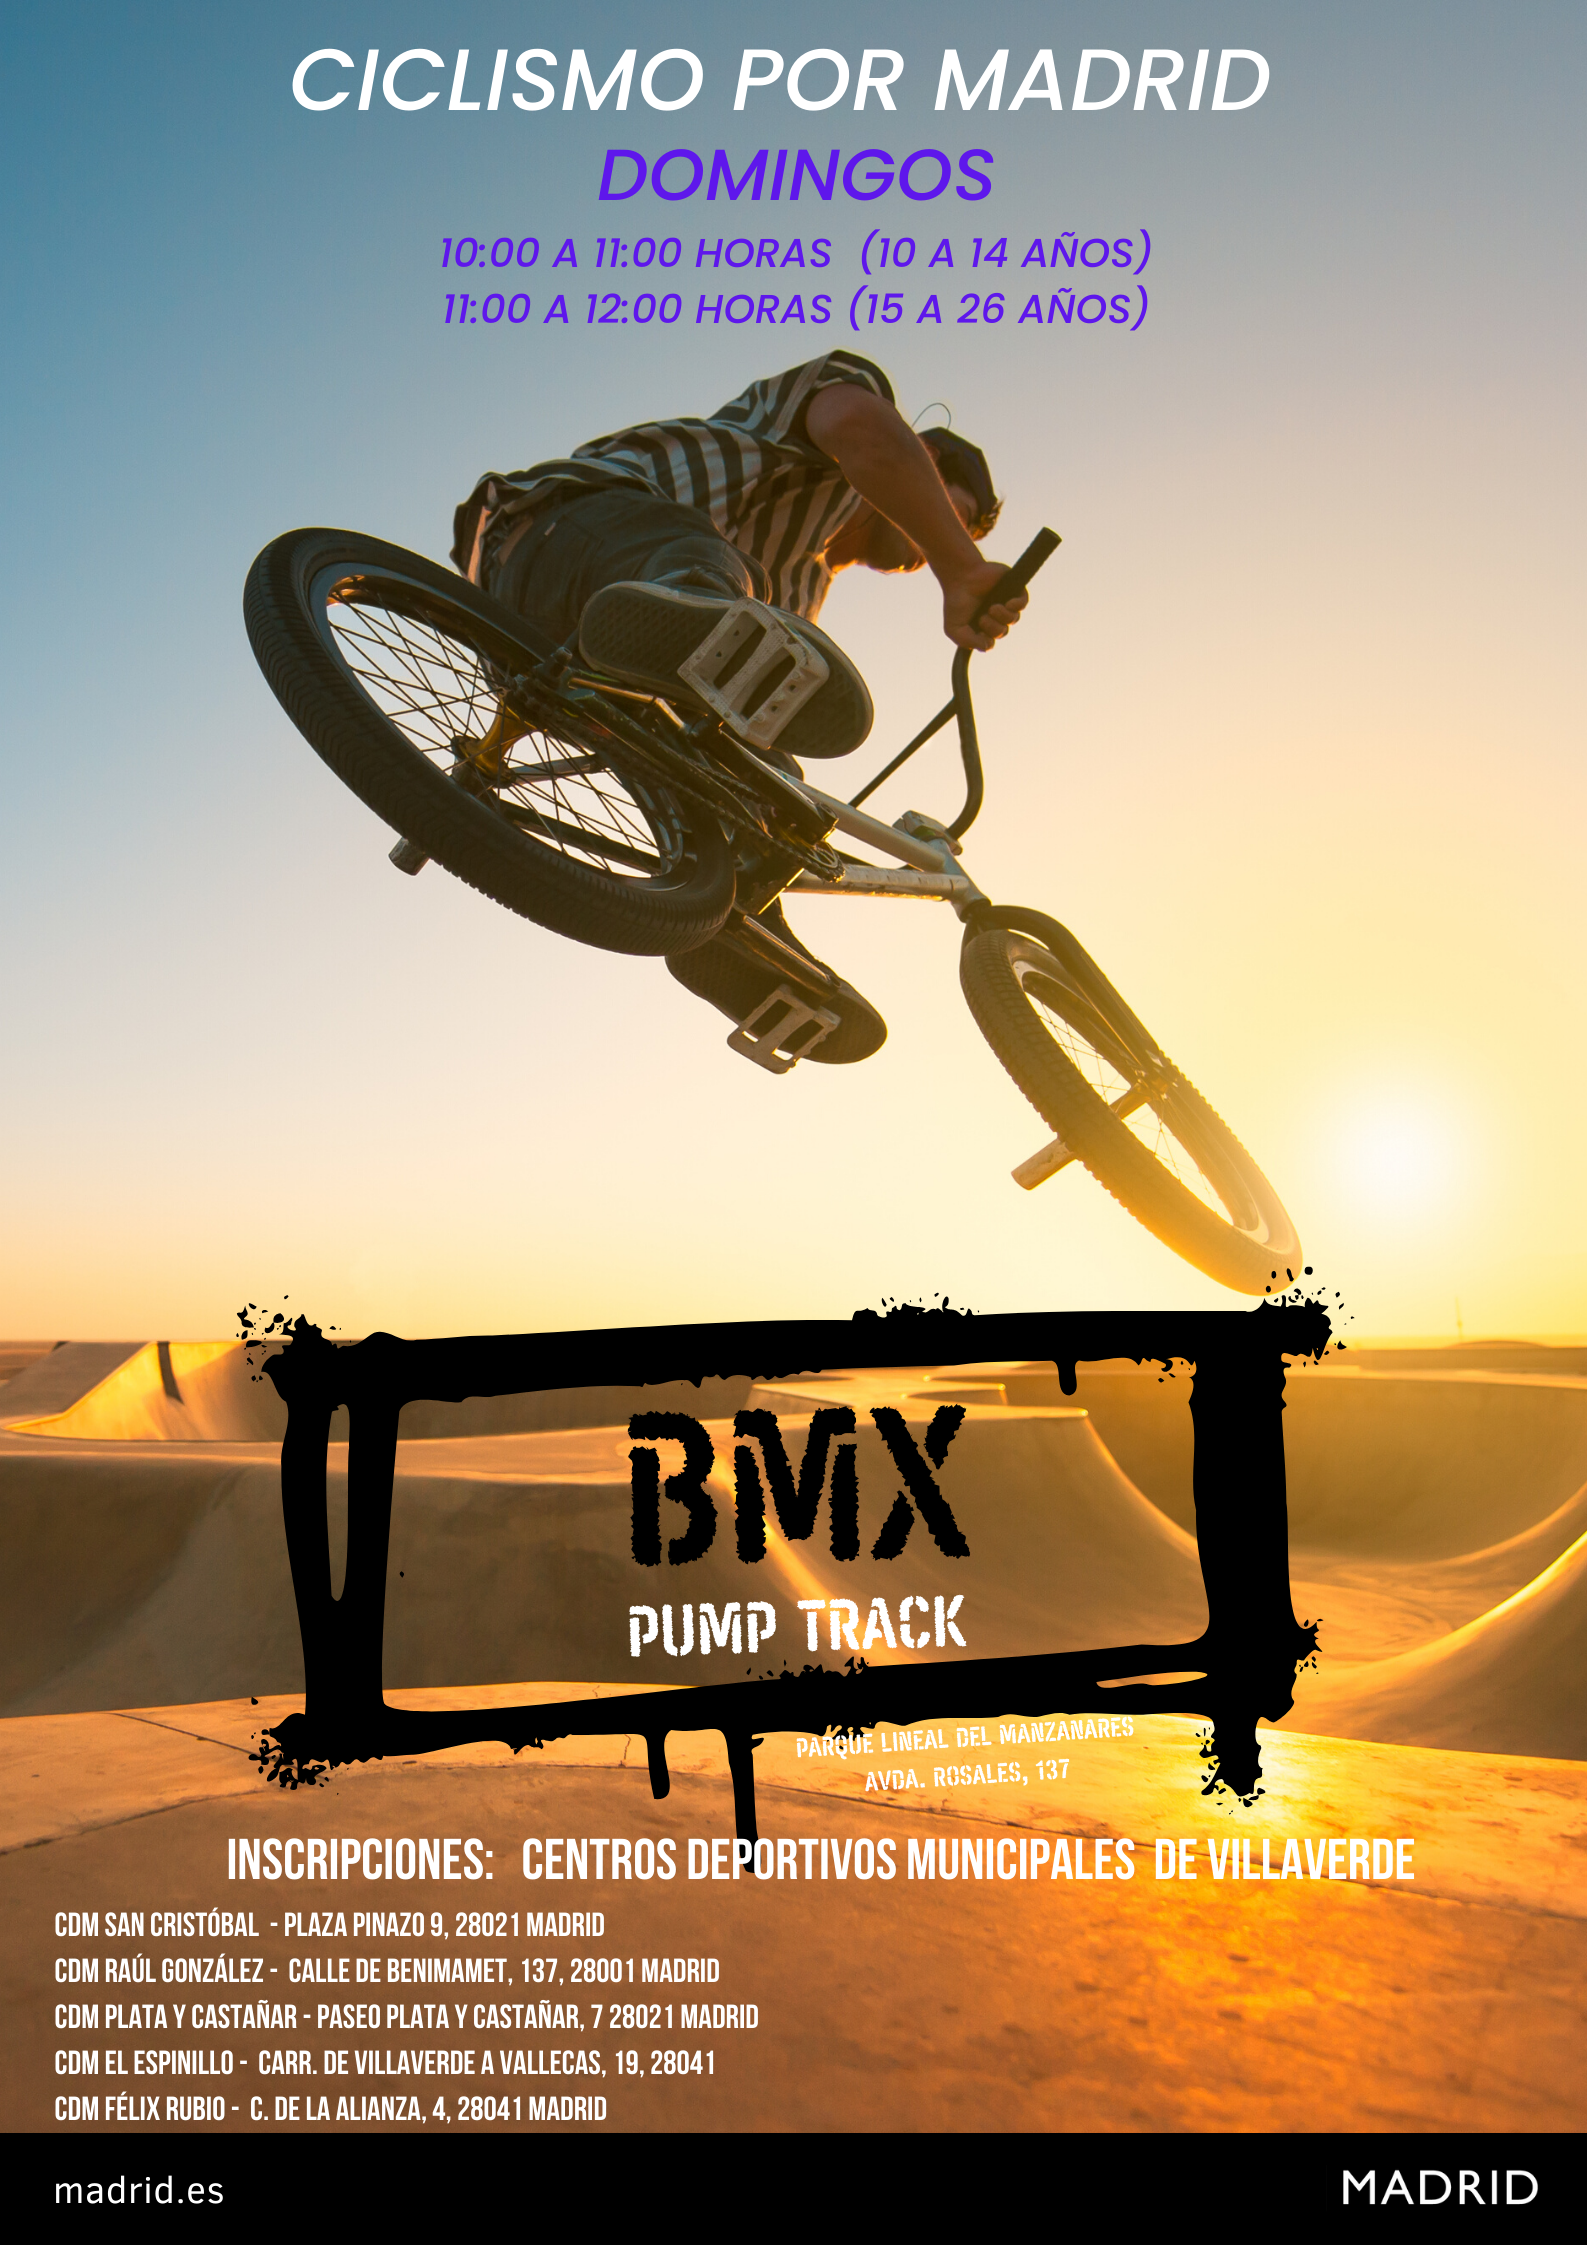 Inicio de la actividad de BMX Pump Track dentro del Programa Ciclismo por Madrid